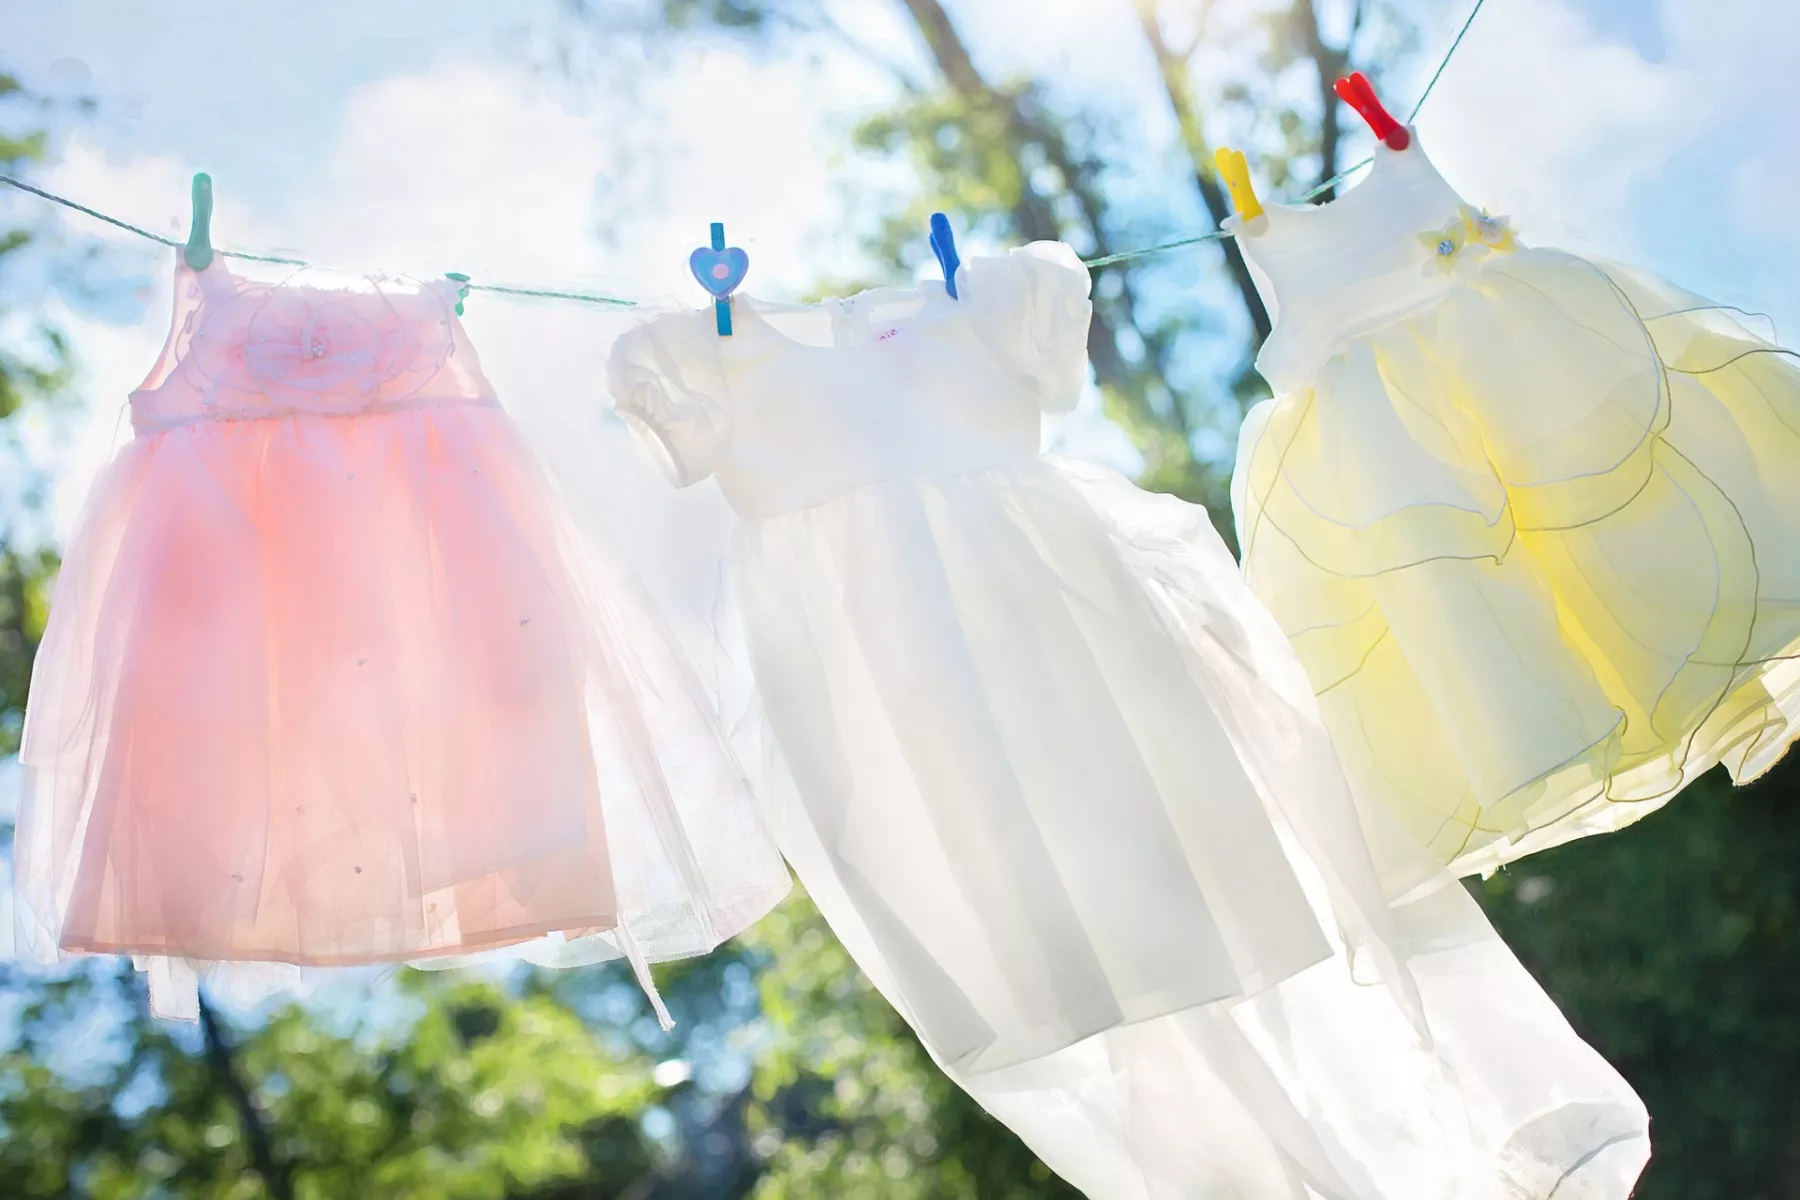 Pastellfarbene Wäsche hängt im strahlenden Sonnenschein auf einer Wäscheleine